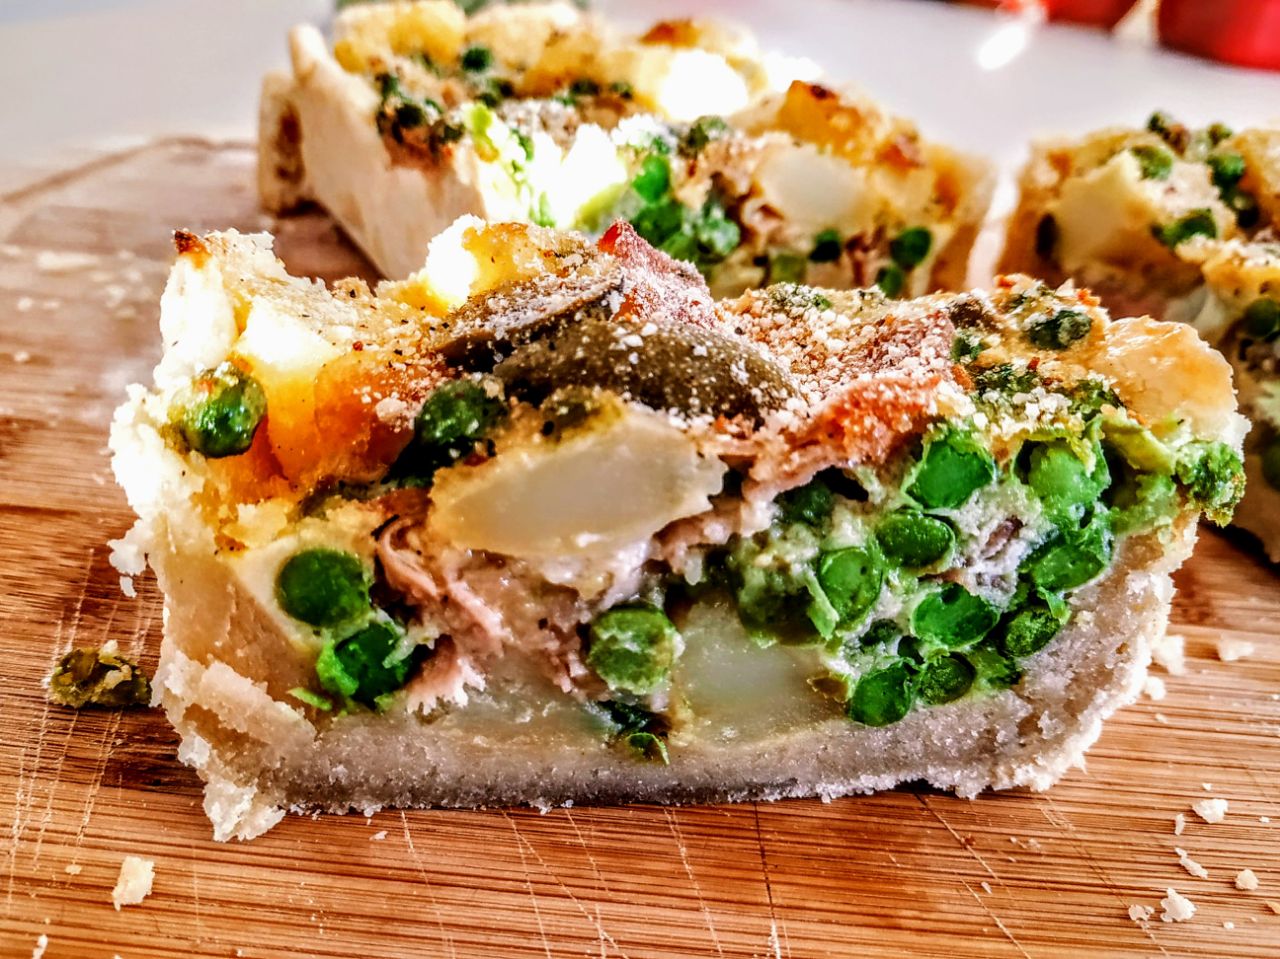 Antipasti senza burro e senza formaggio: quiche con patate piselli verdi prosciutto crudo e olive di Cerignola